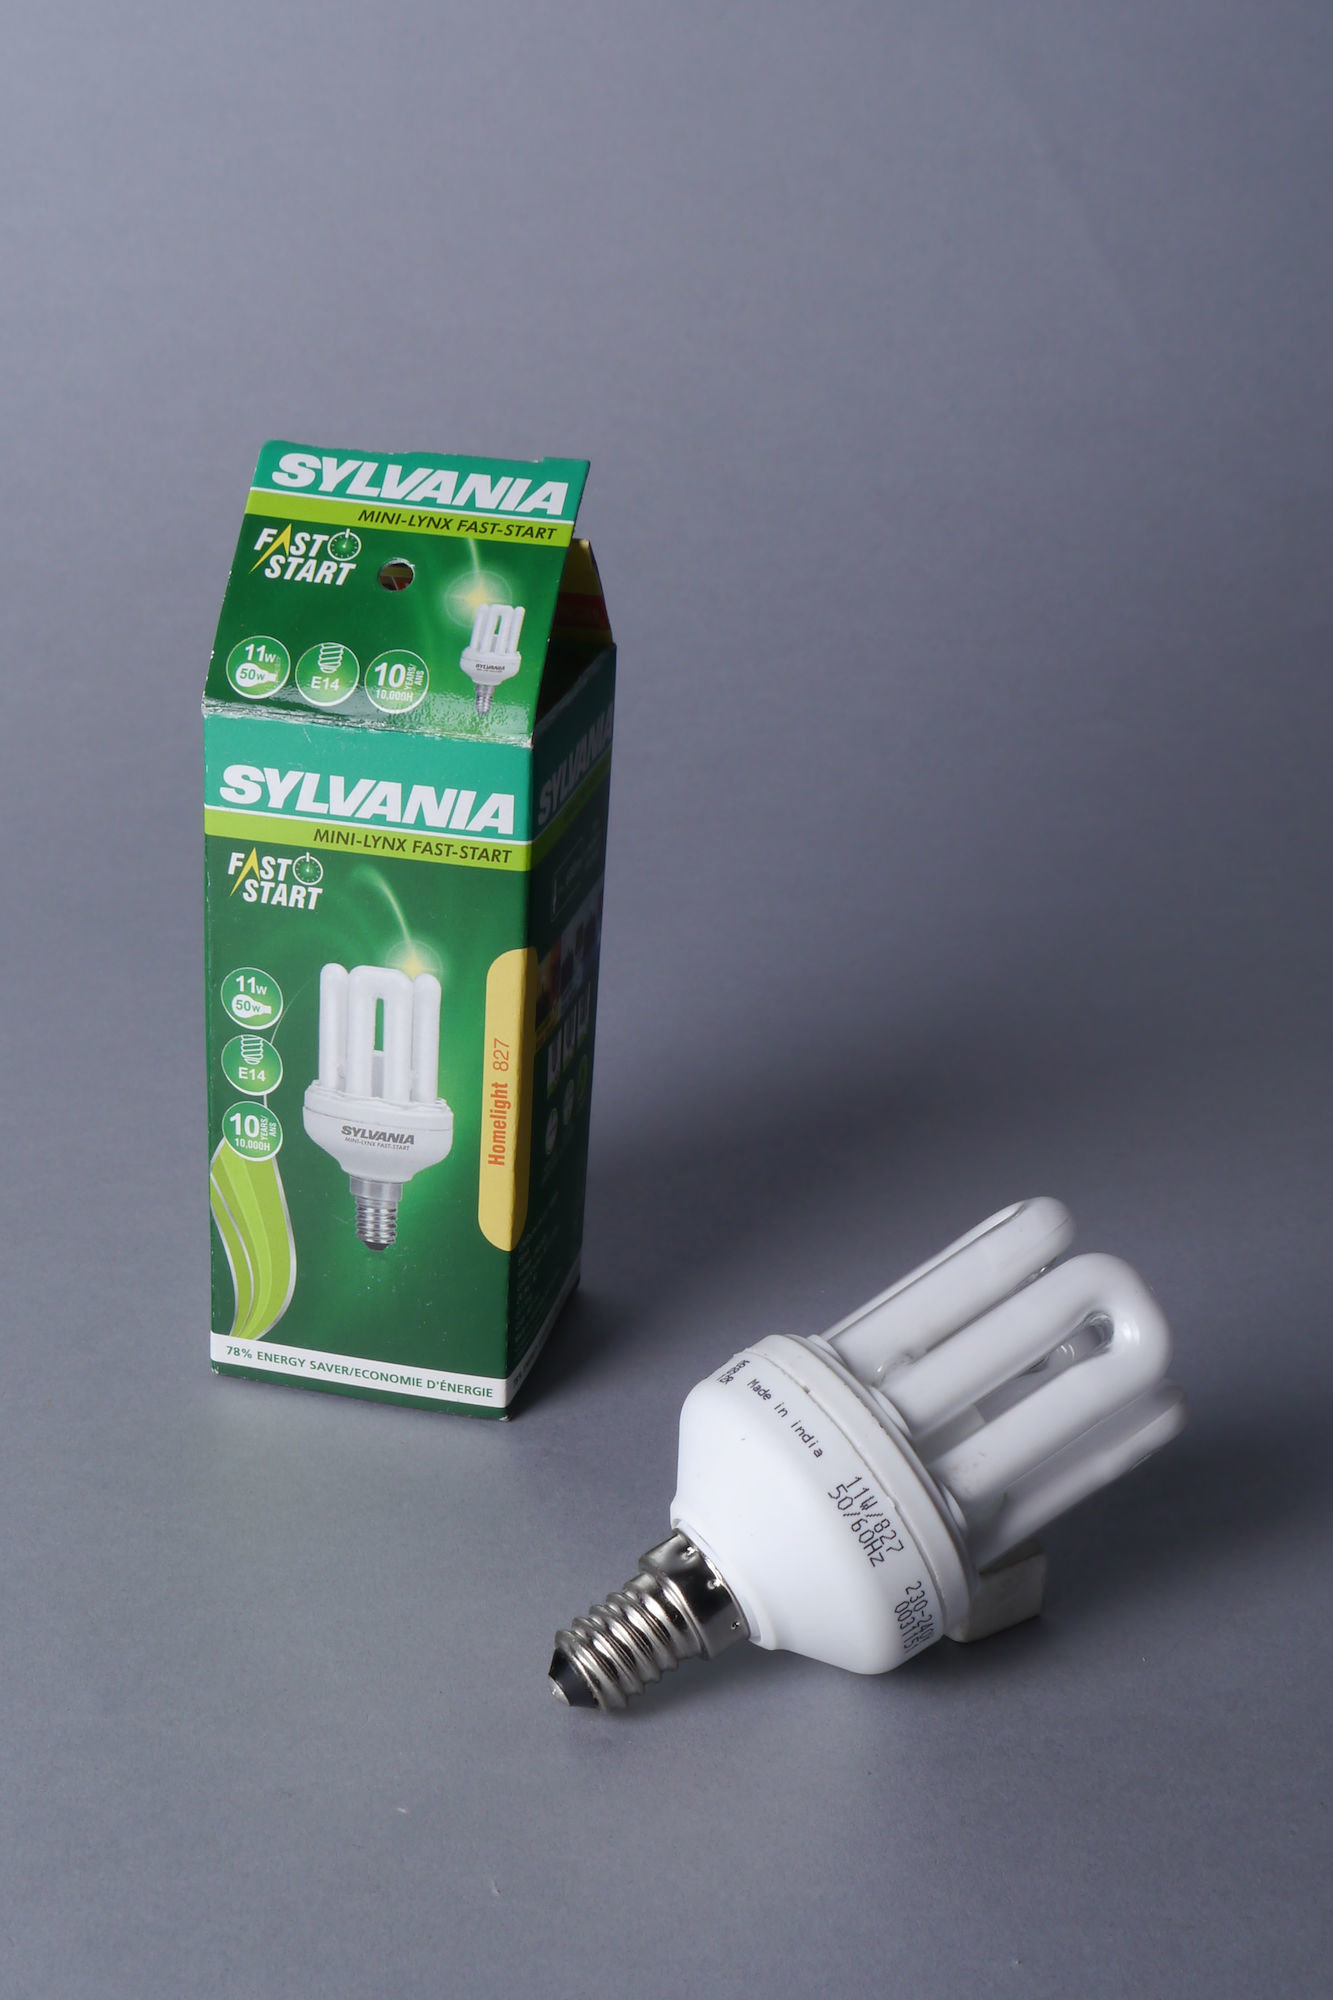 Lagedruk gasontladingslamp van het merk Sylvania